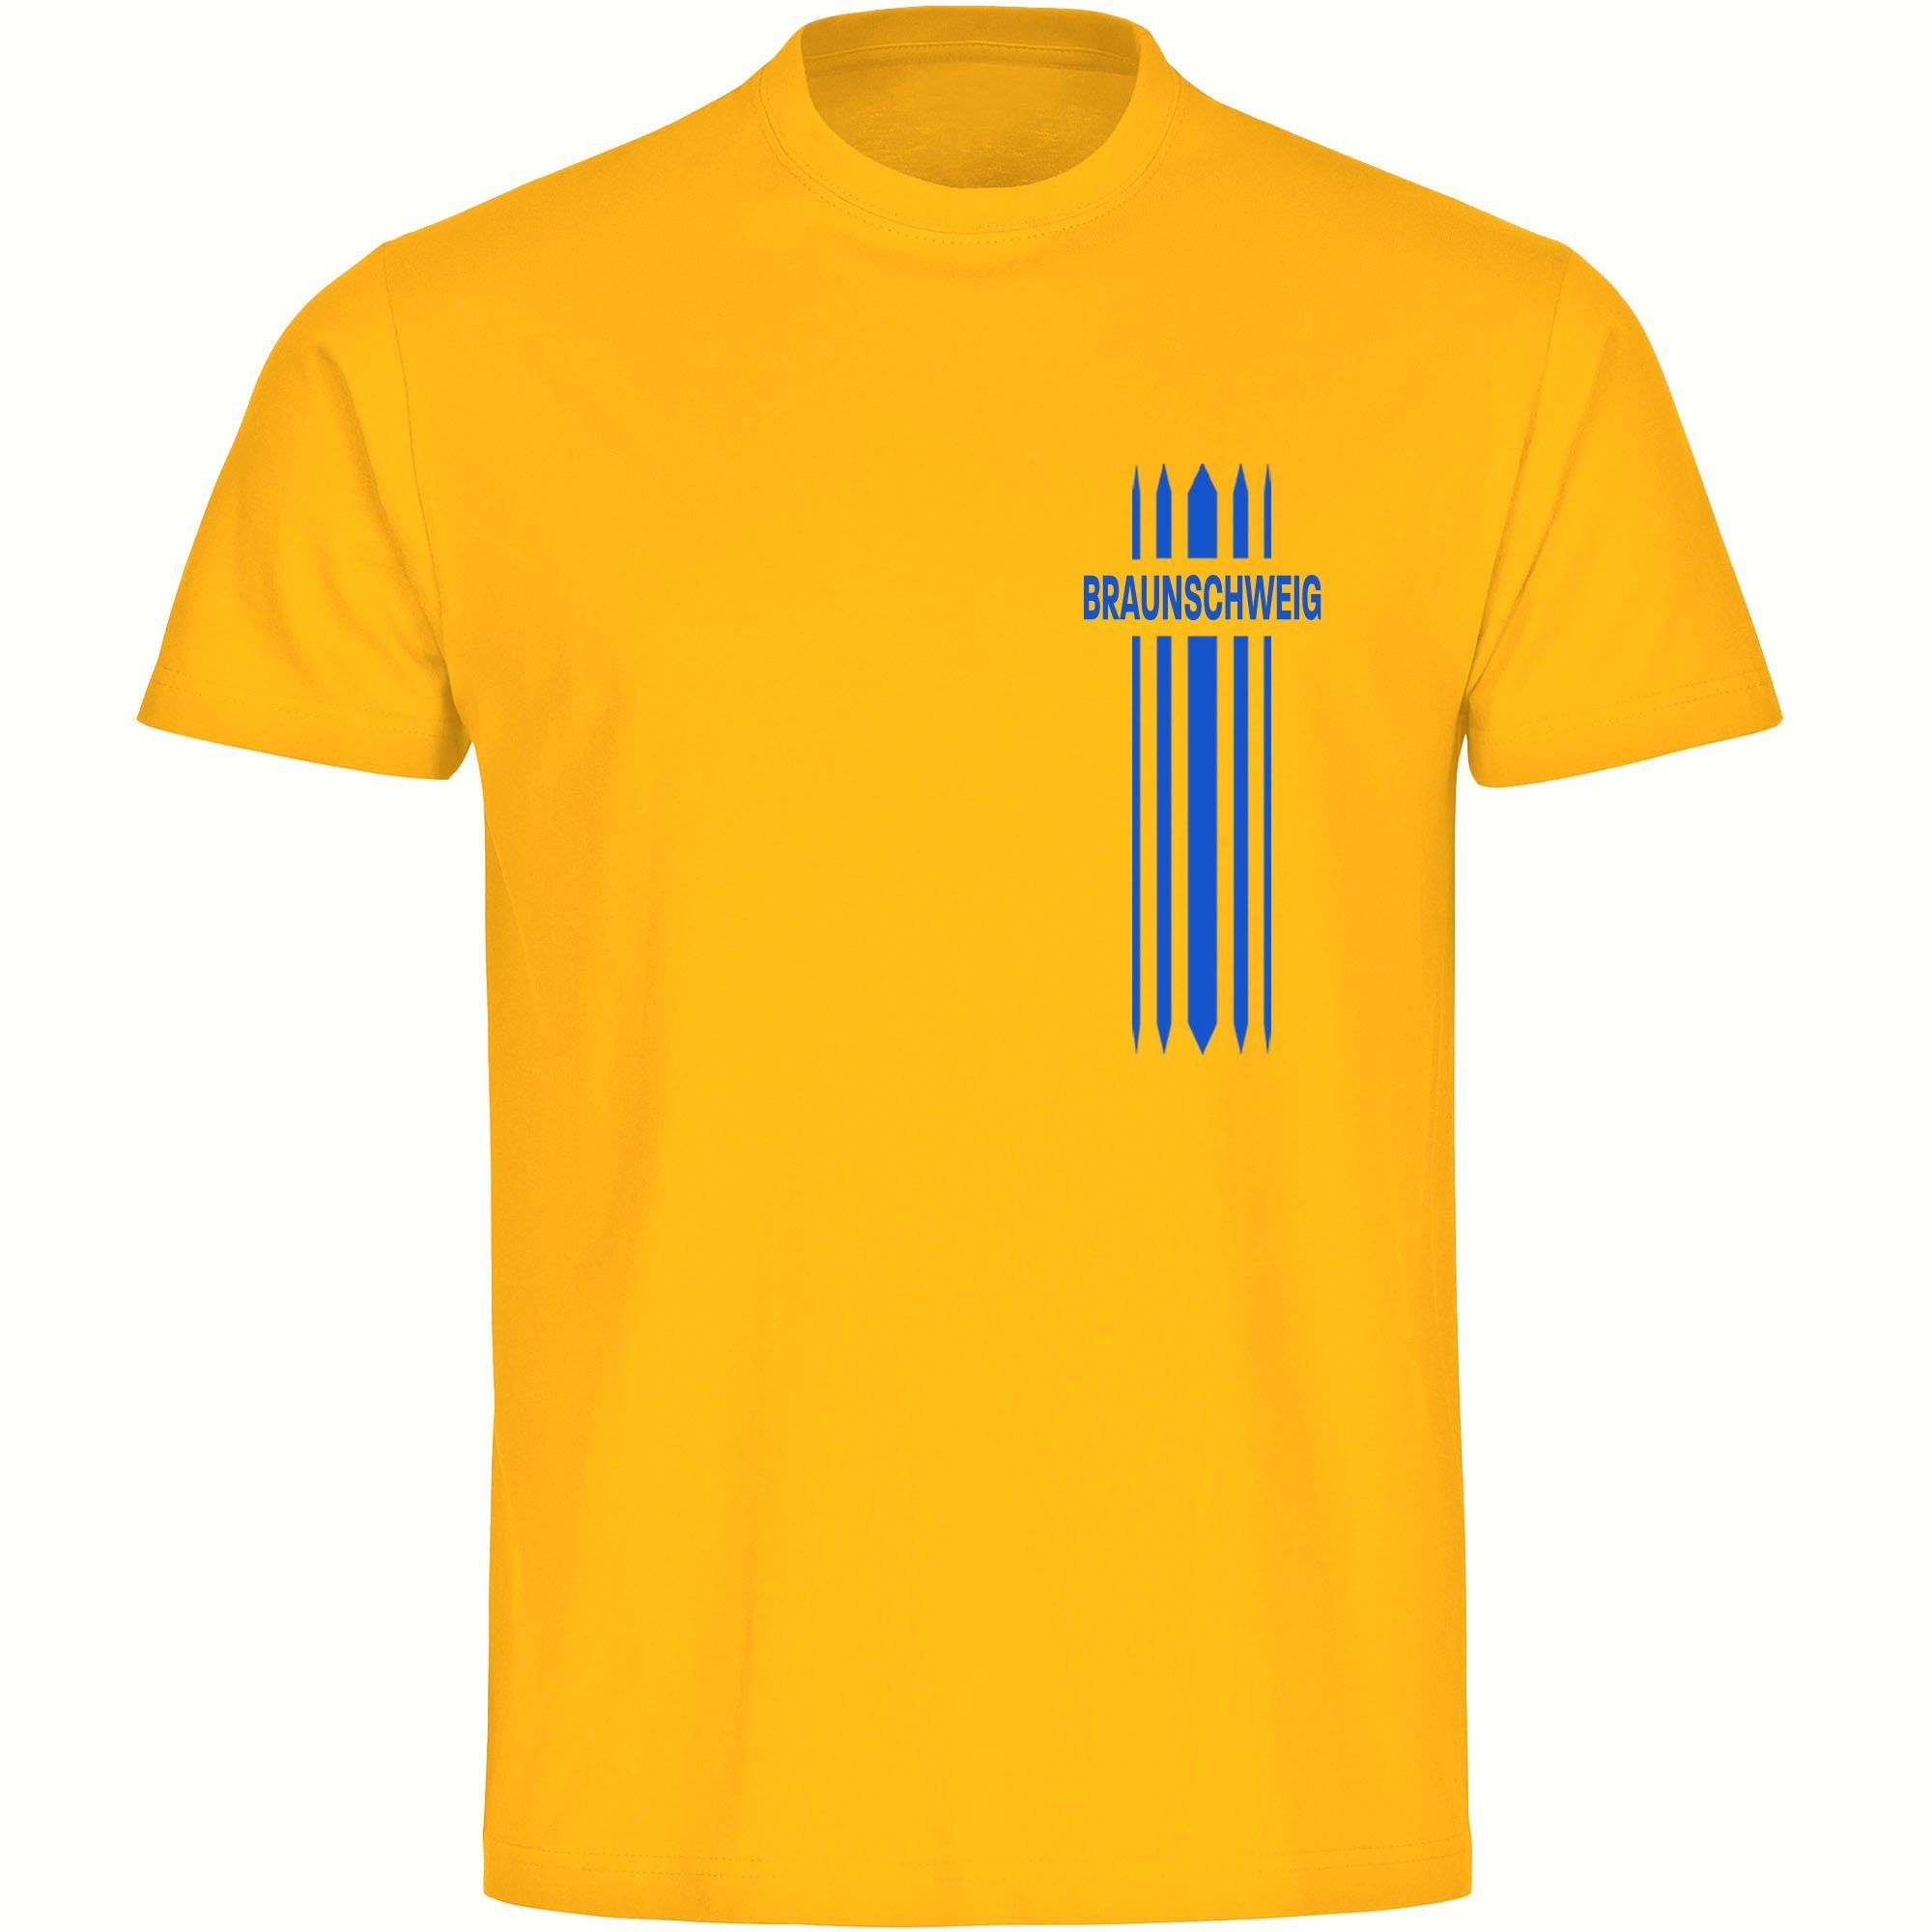 multifanshop T-Shirt Herren Braunschweig - Streifen - Männer